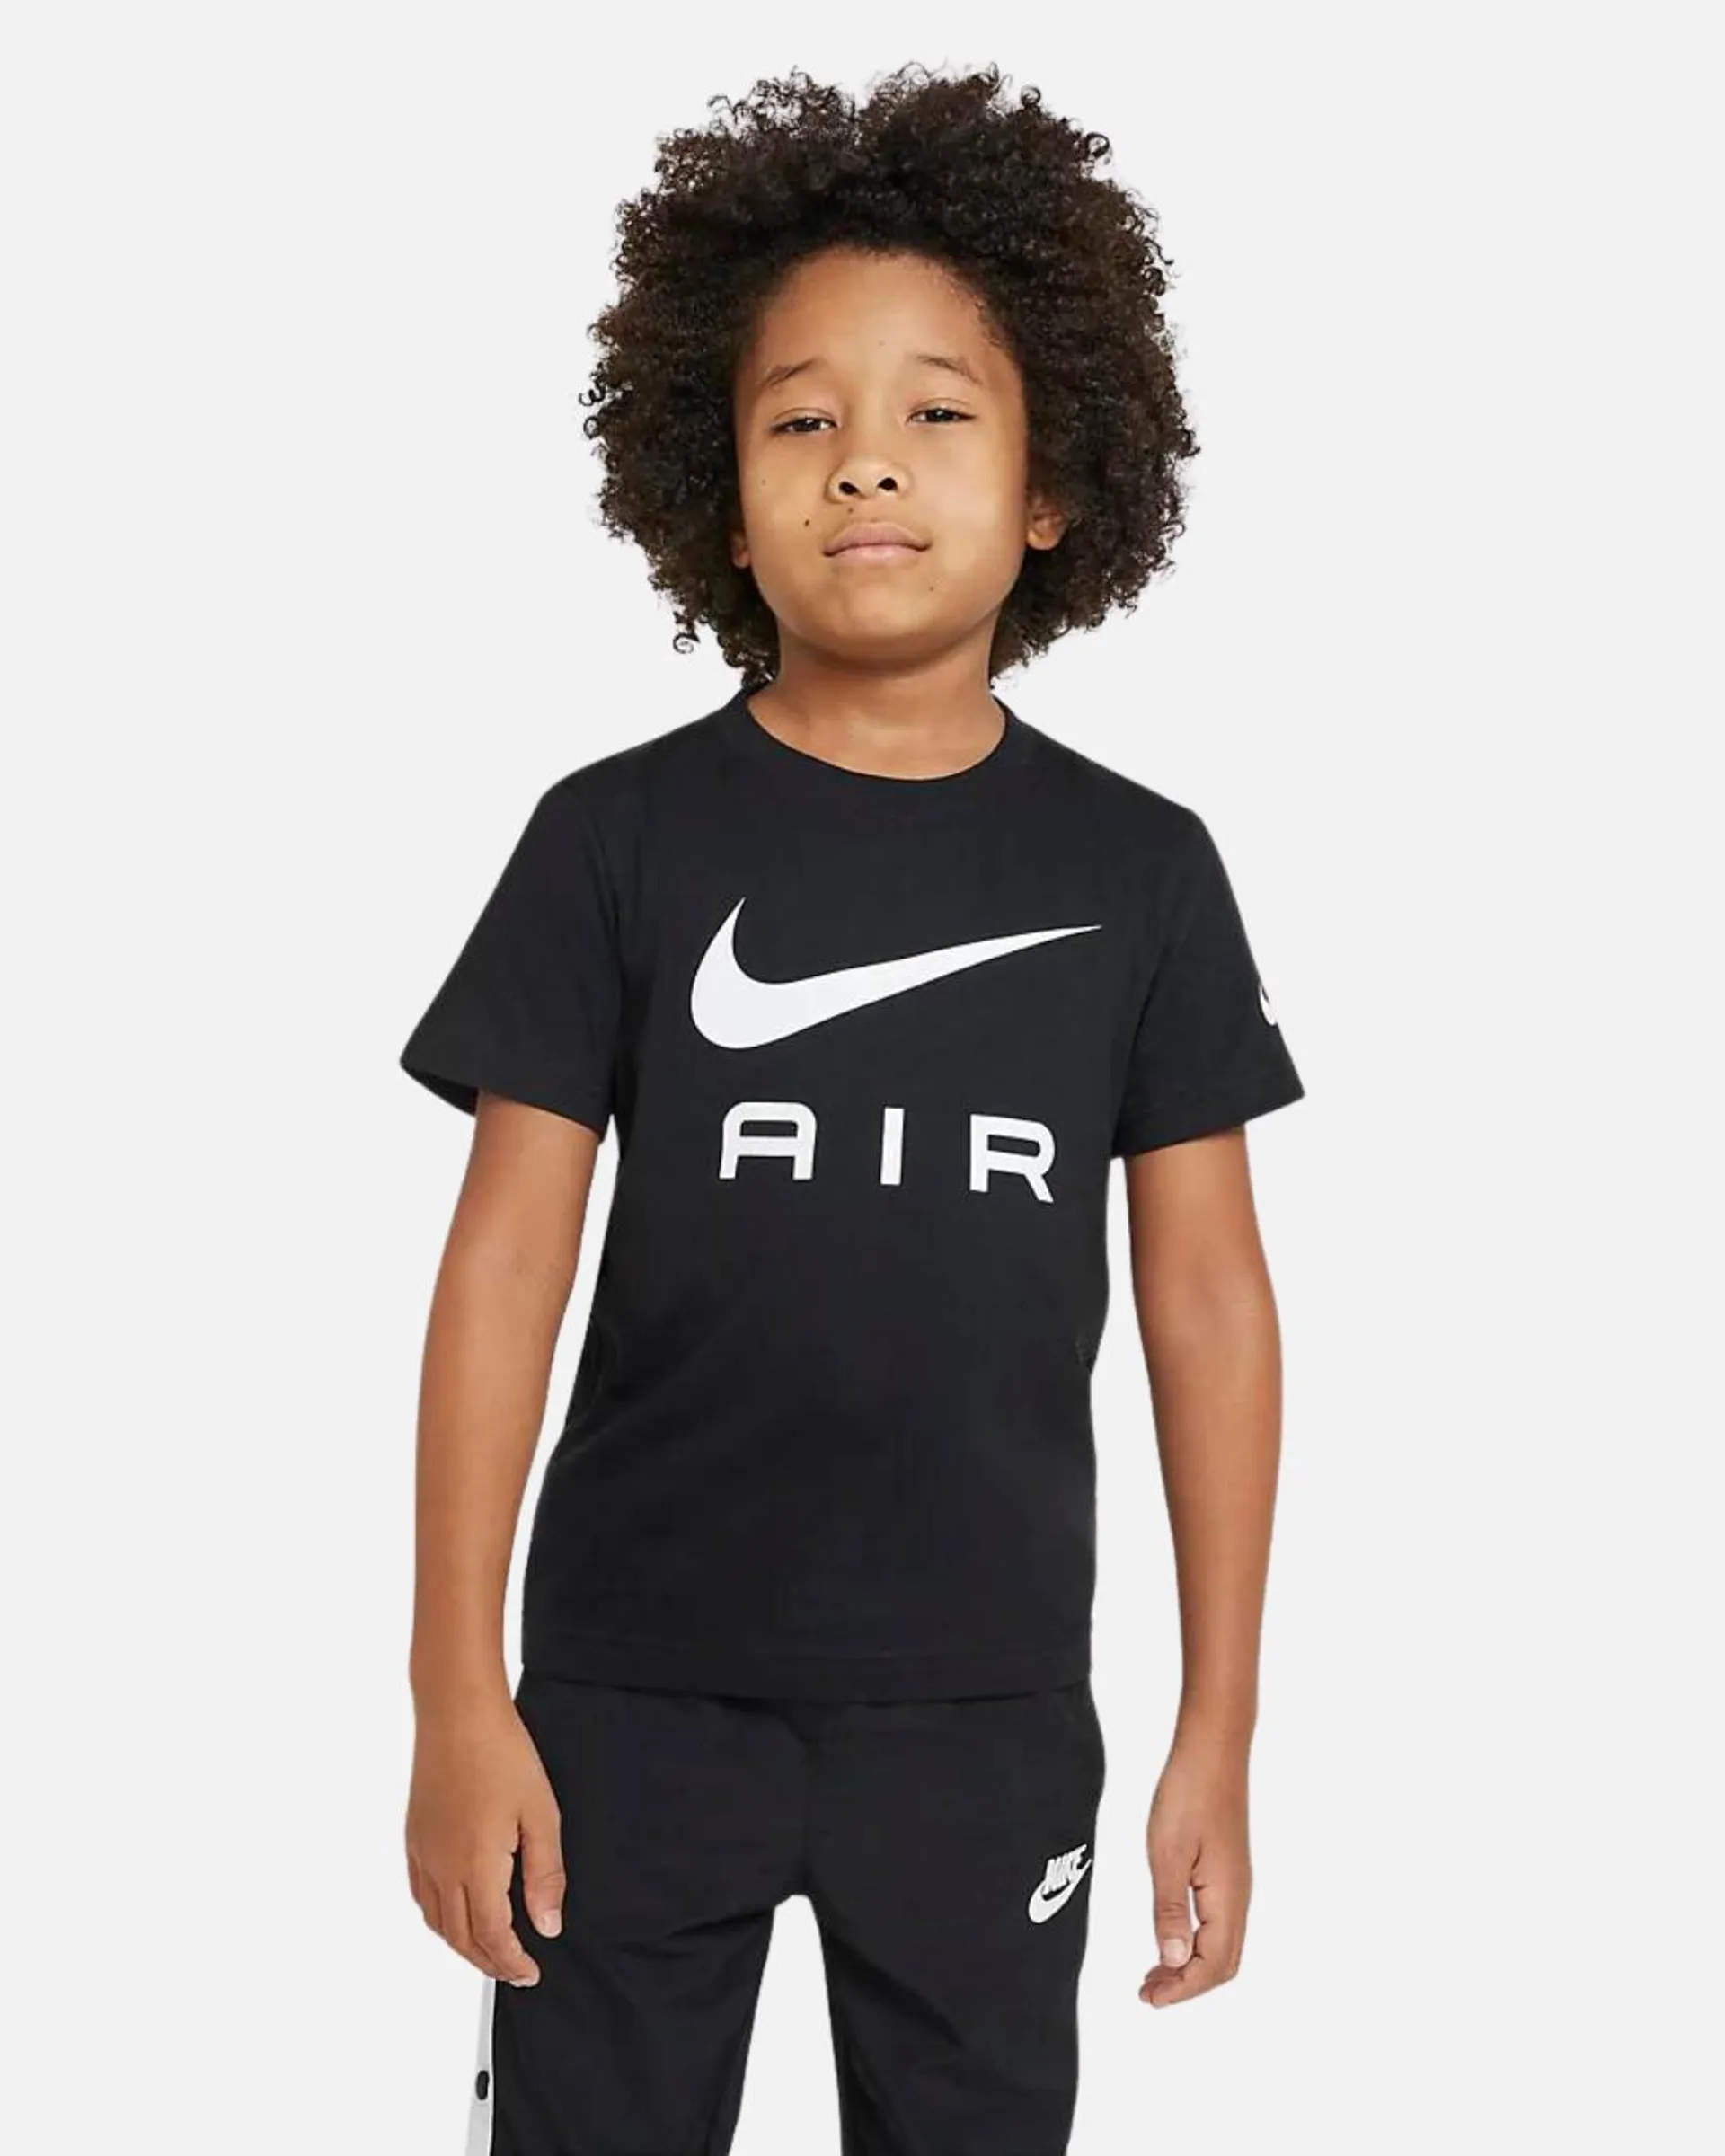 T-Shirt Nike Air Enfant - Noir